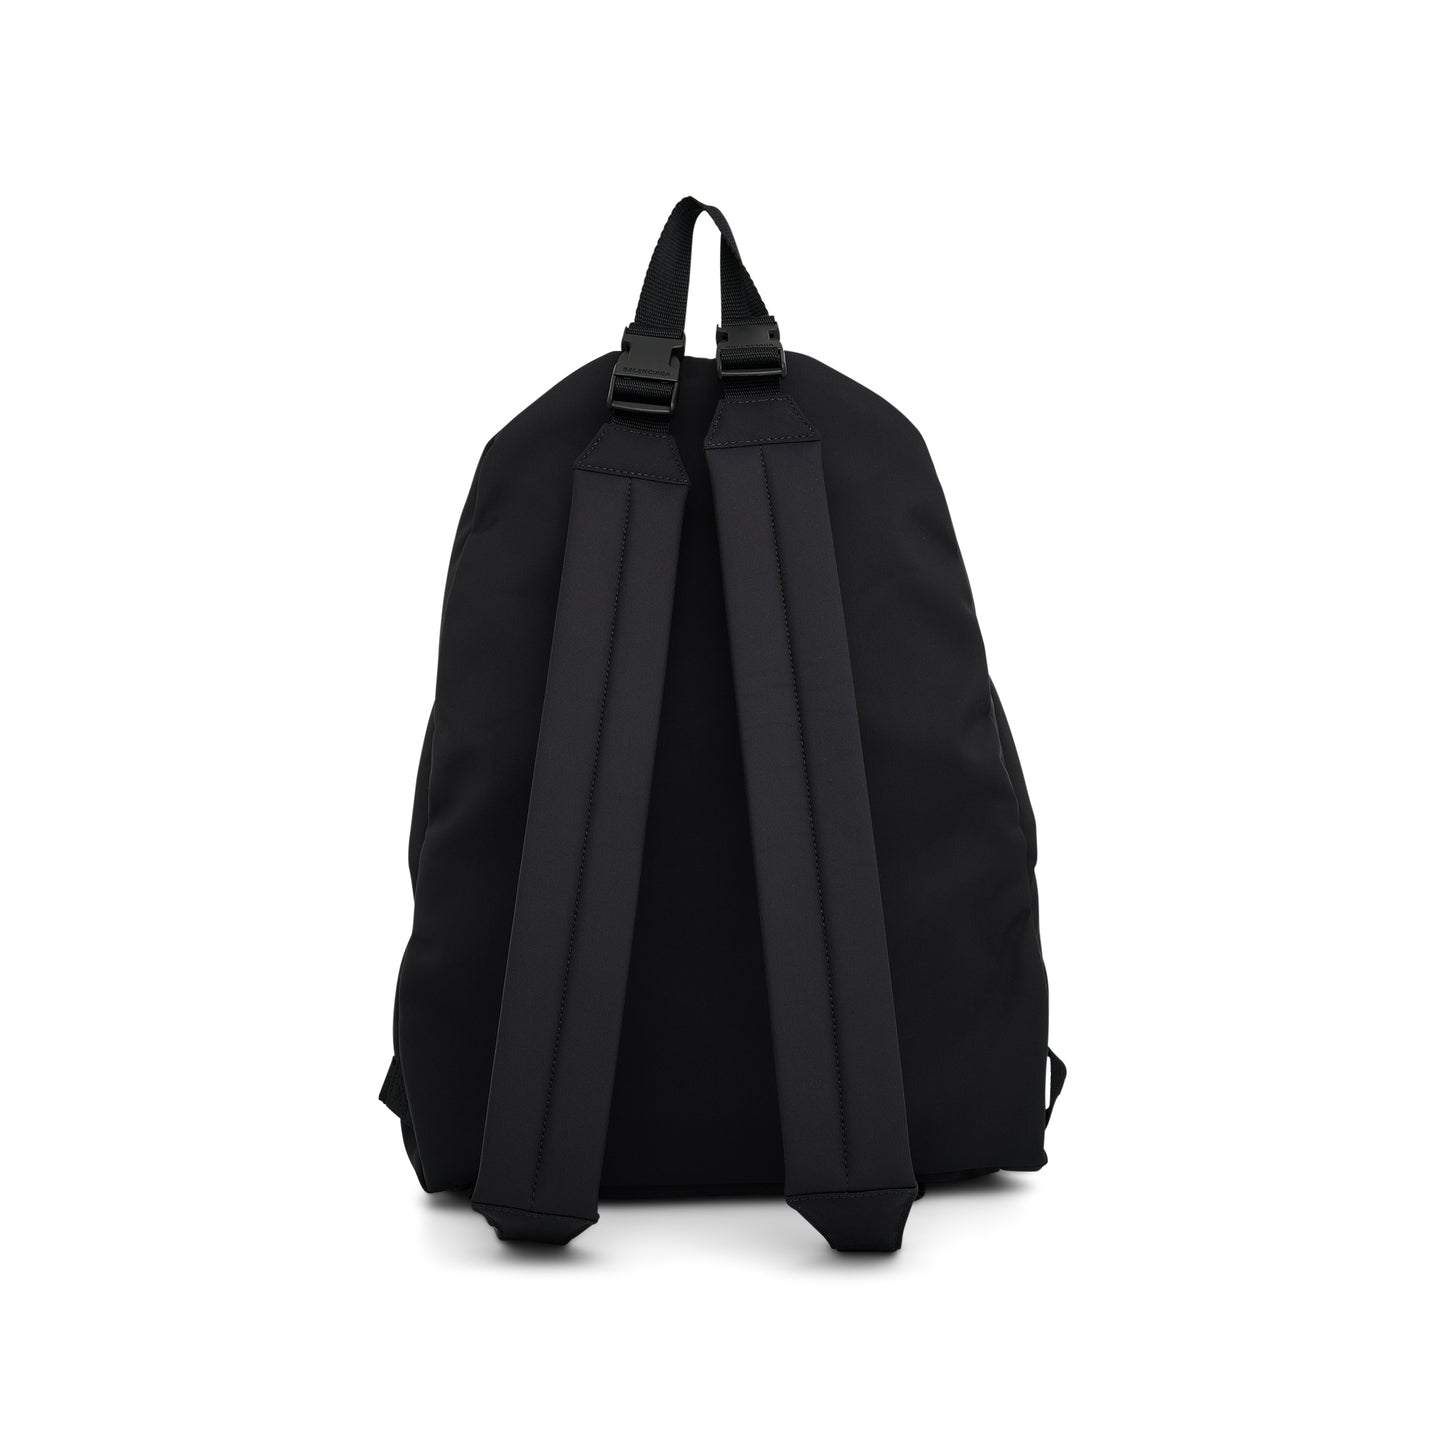 Explorer Reversible Backpack in Black/Beige